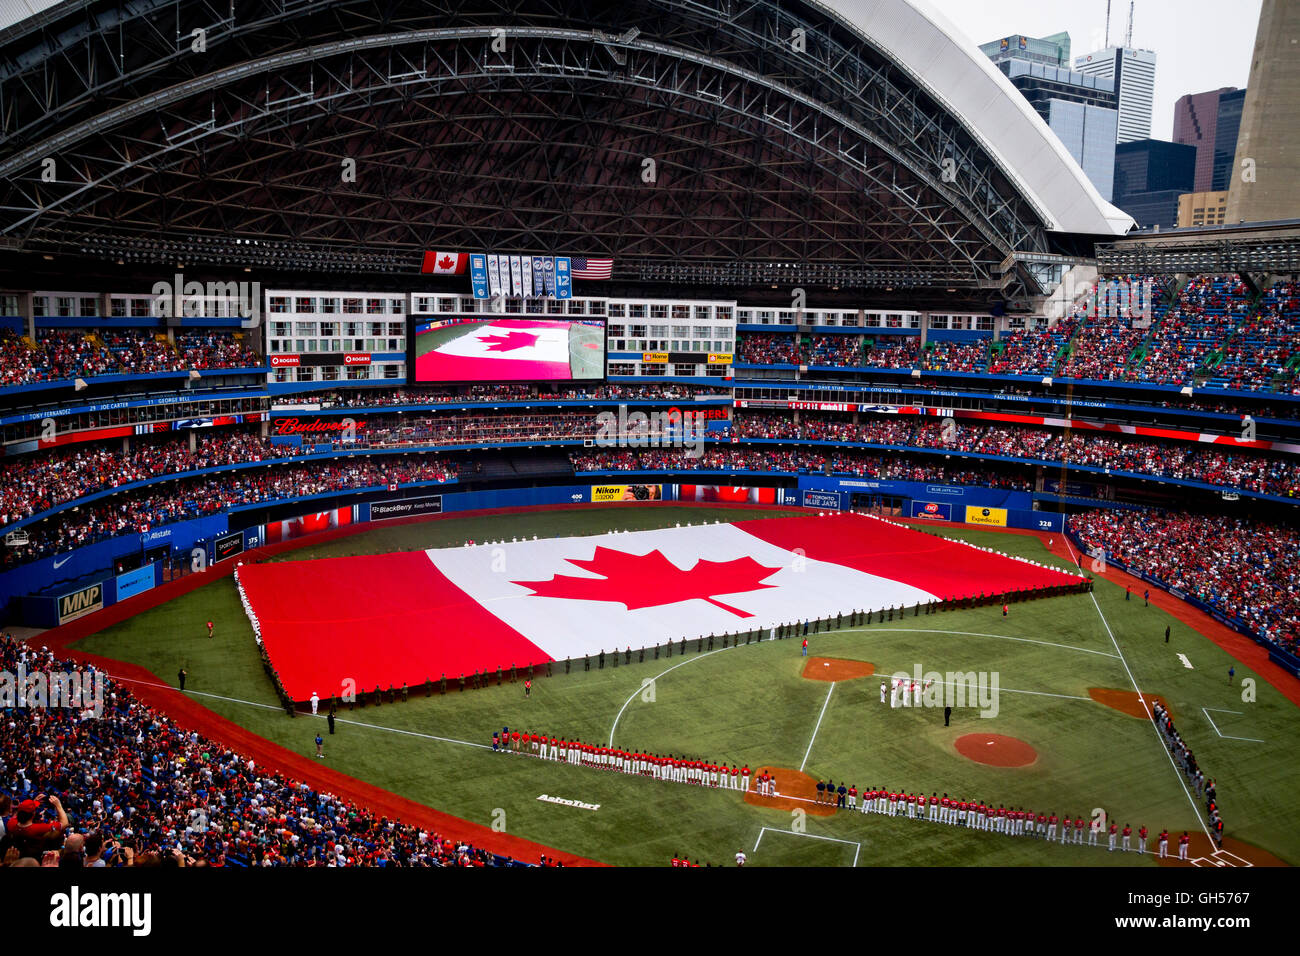 Die Teams Nationalhymnen werden gesungen, wie eine kanadische Flagge am Canada Day im Rogers Centre in Toronto, Kanada ausgerollt wird. Stockfoto